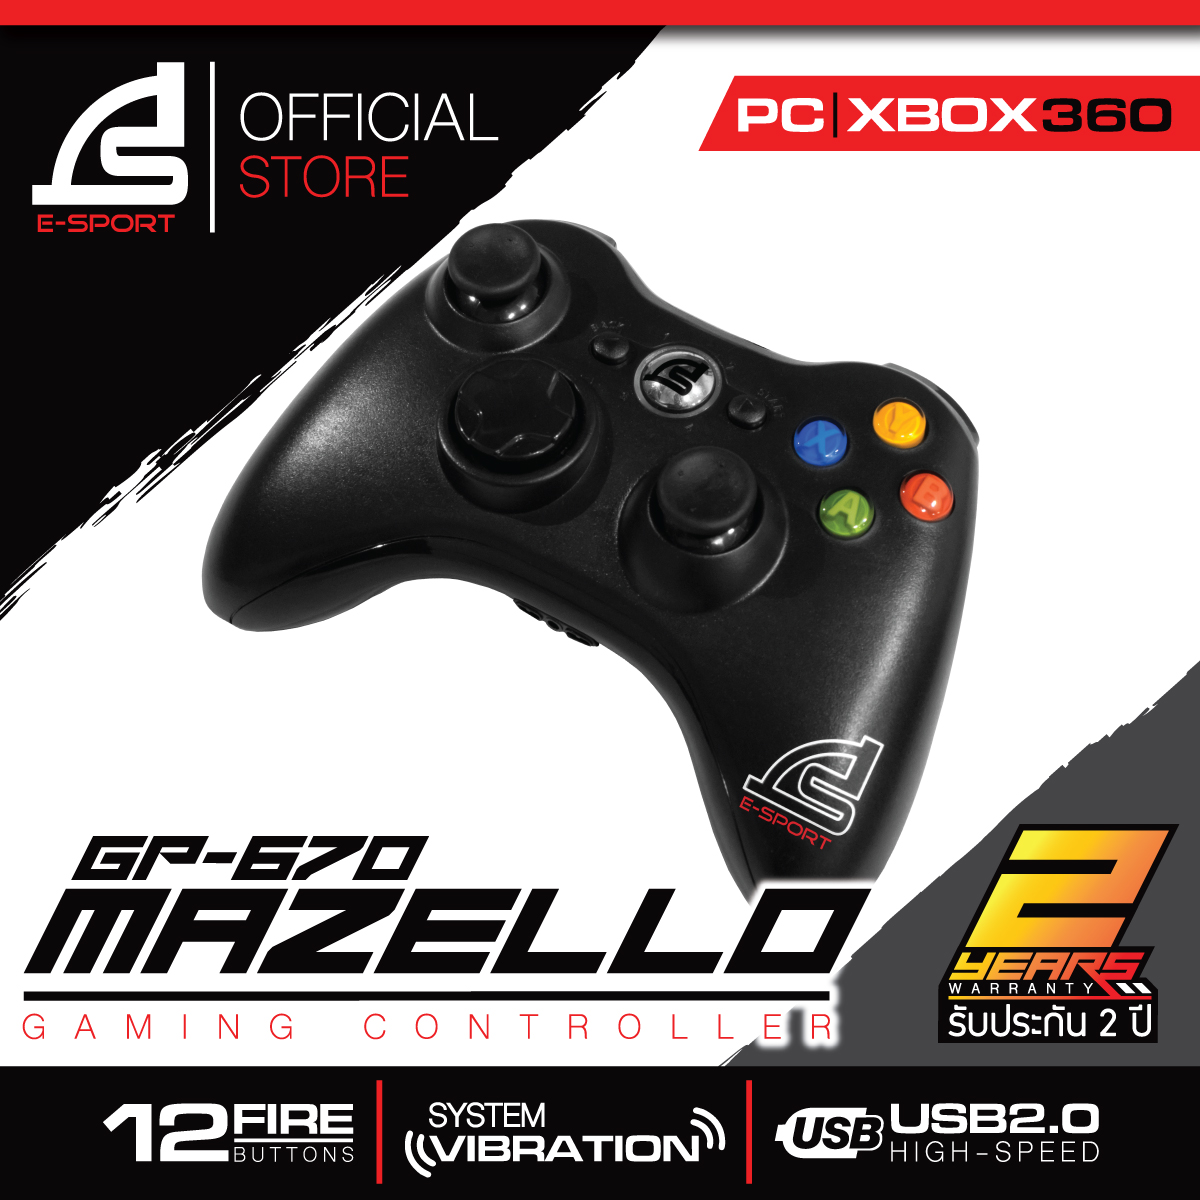 SIGNO E-Sport Gaming Controller รุ่น MAZELLO GP-670 (จอยเกมส์)